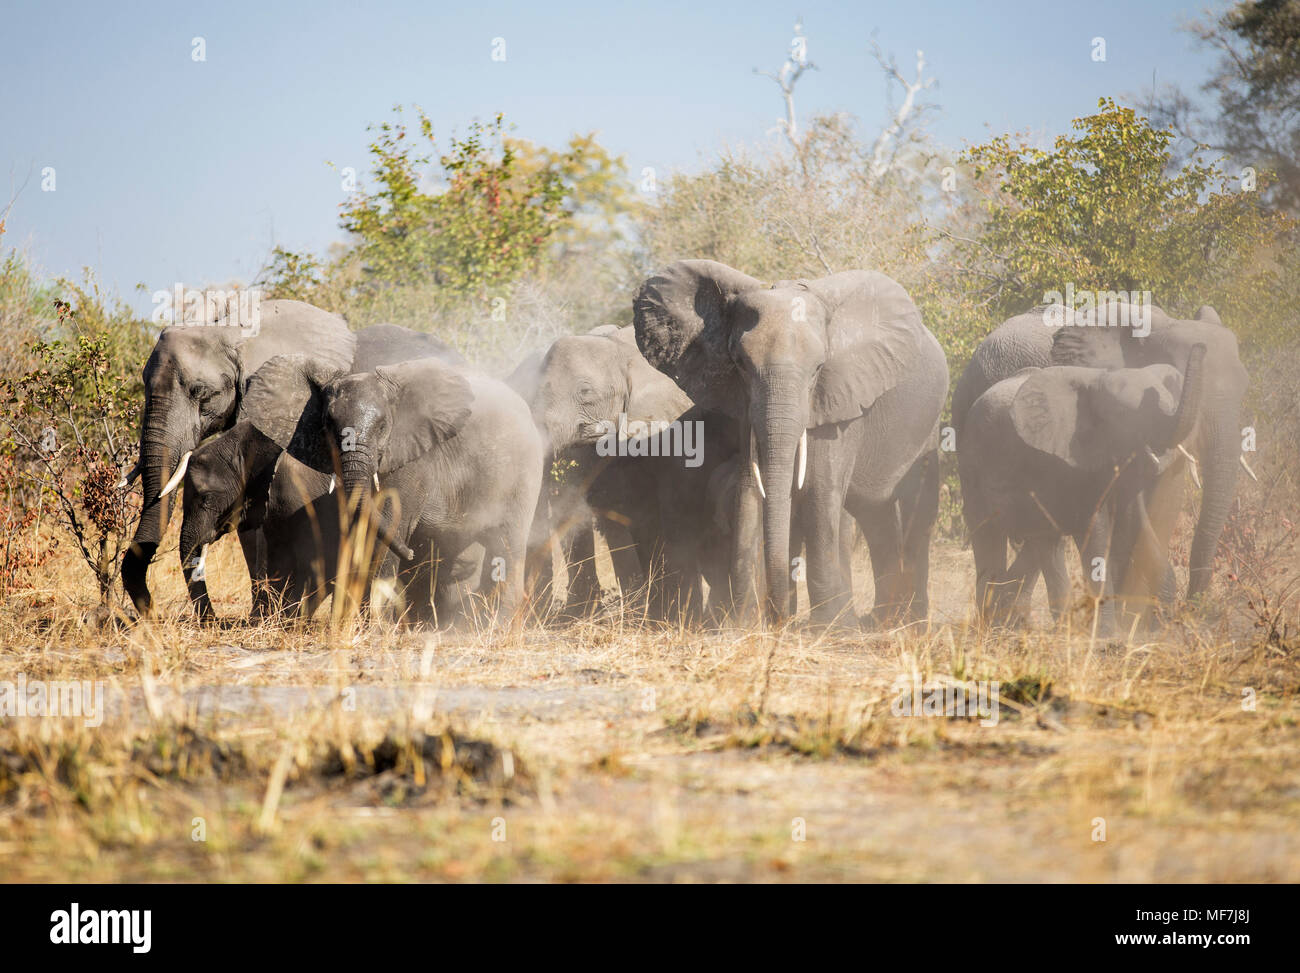 L'Afrique, la Namibie, l'éléphant, Caprivi poussière tourbillonnante Banque D'Images